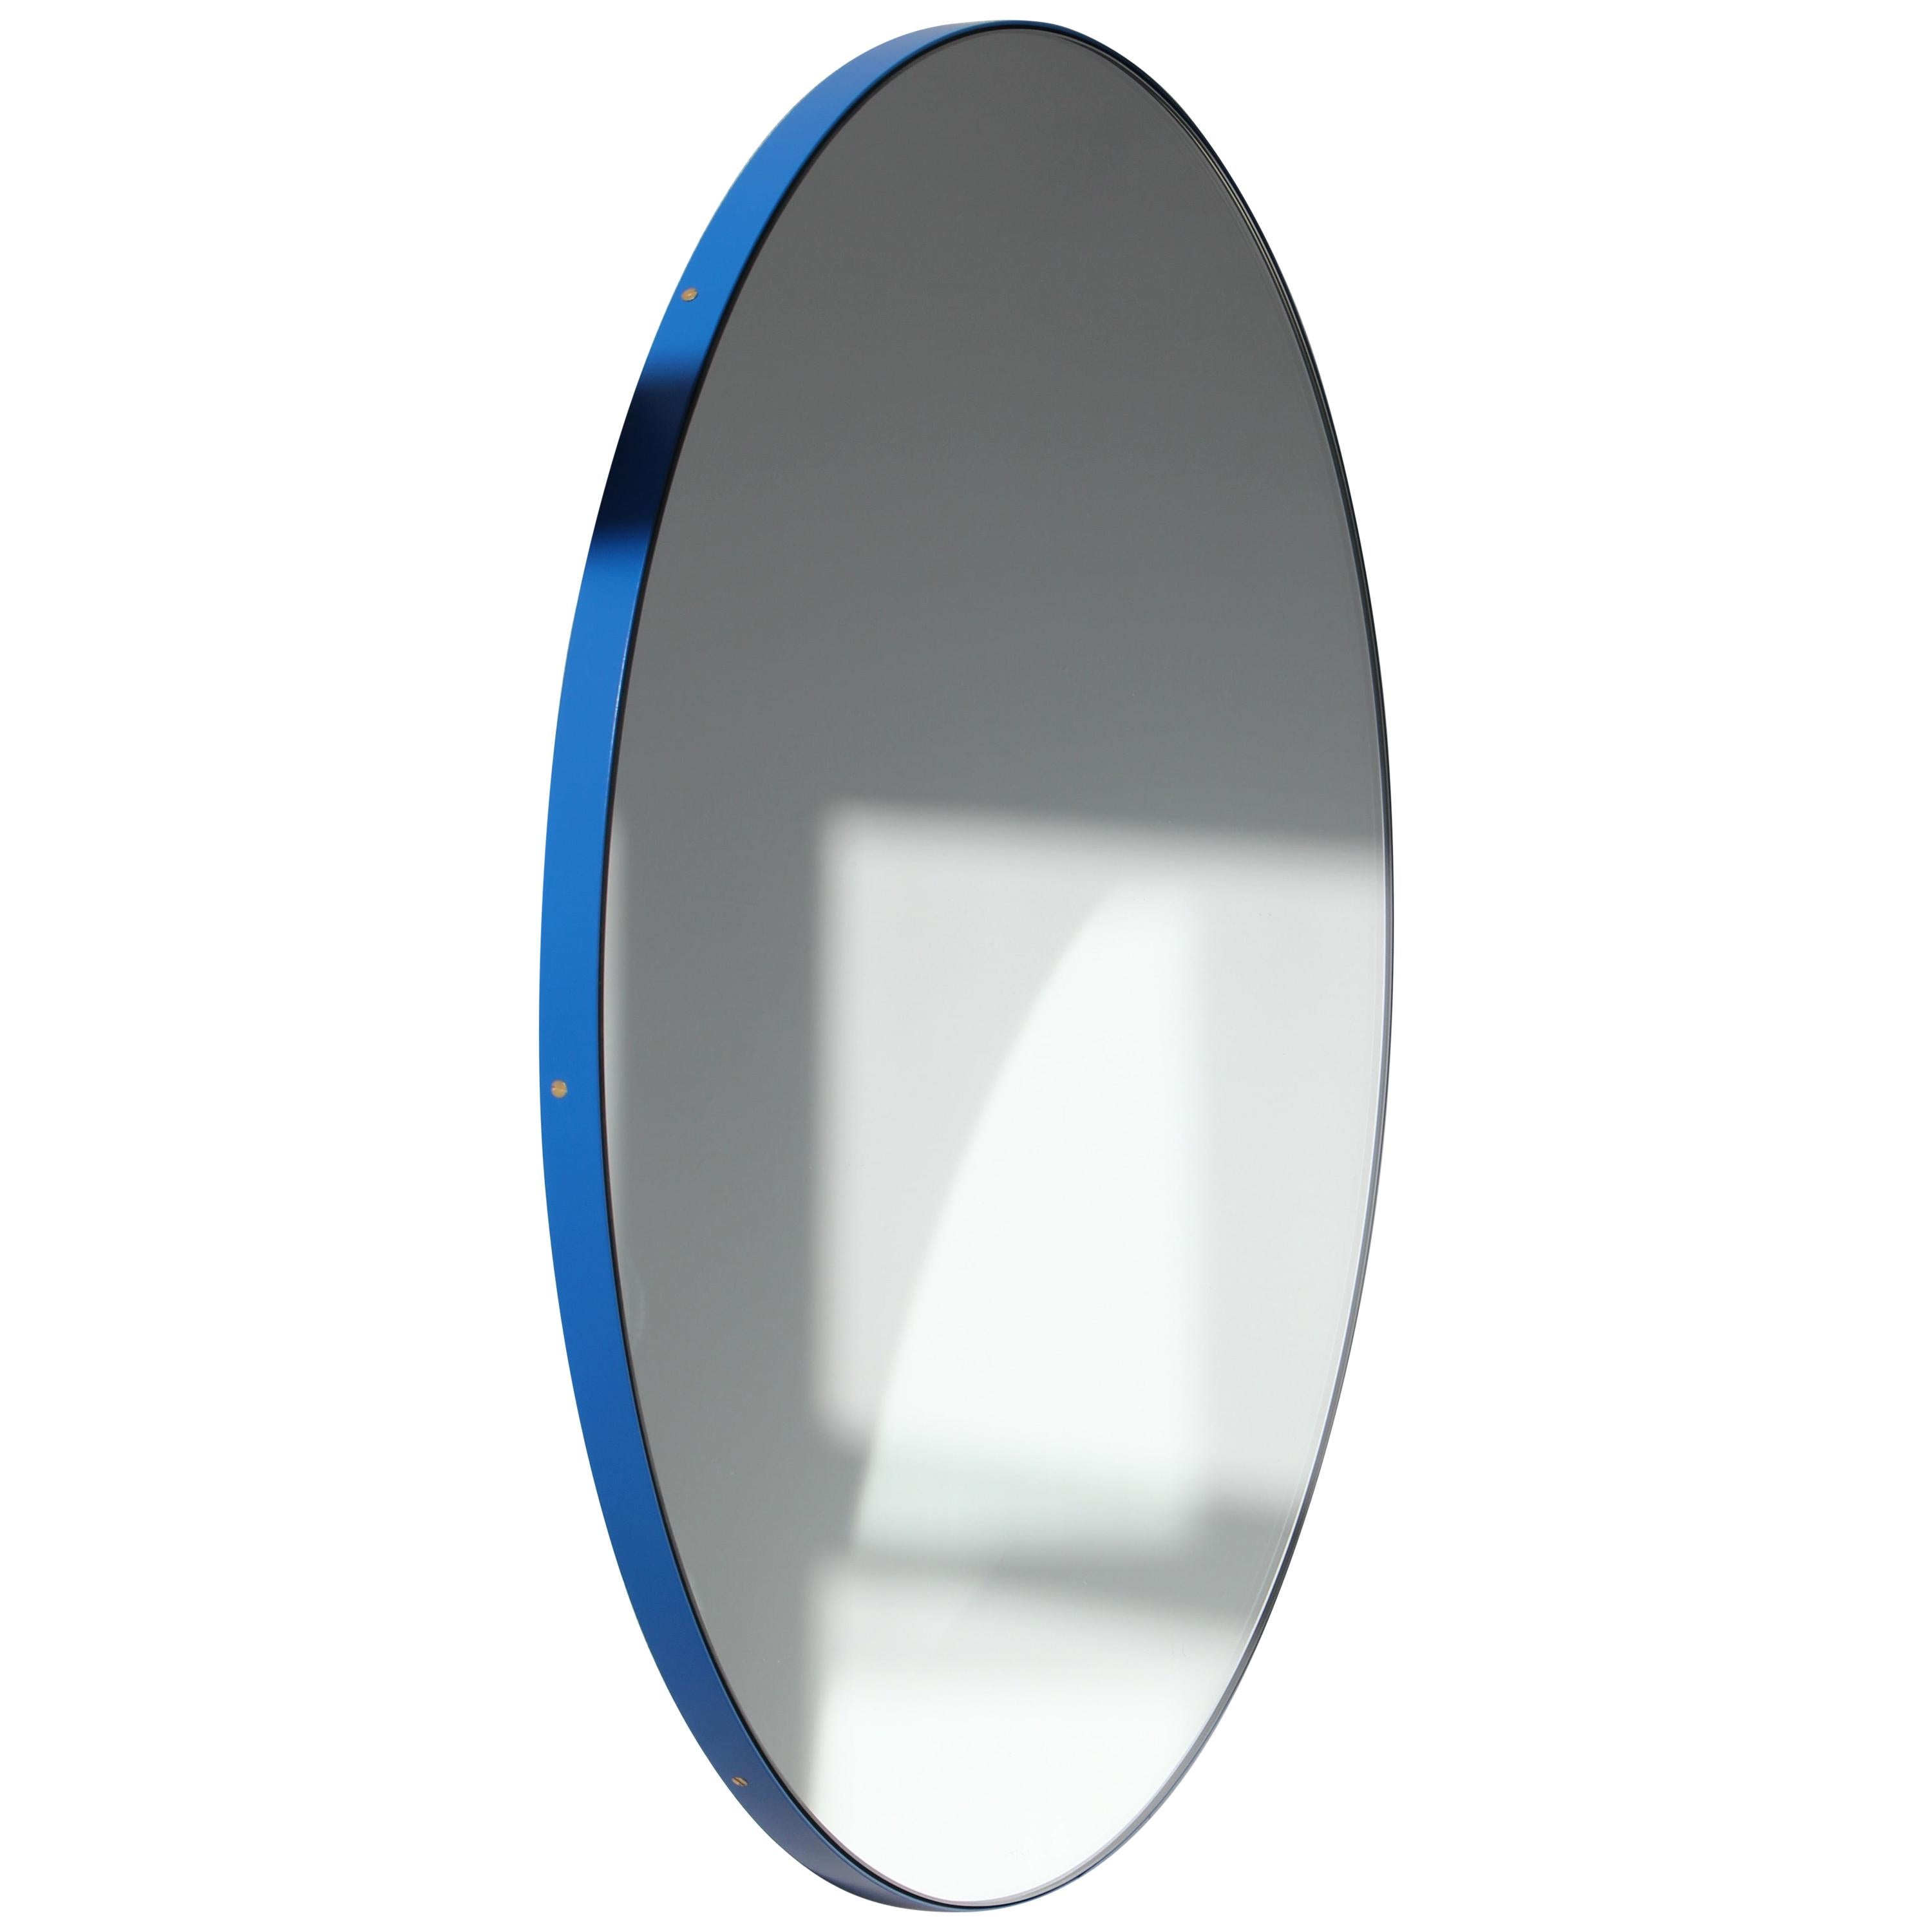 Orbis Round Modern Mirror with Blue Frame, Large